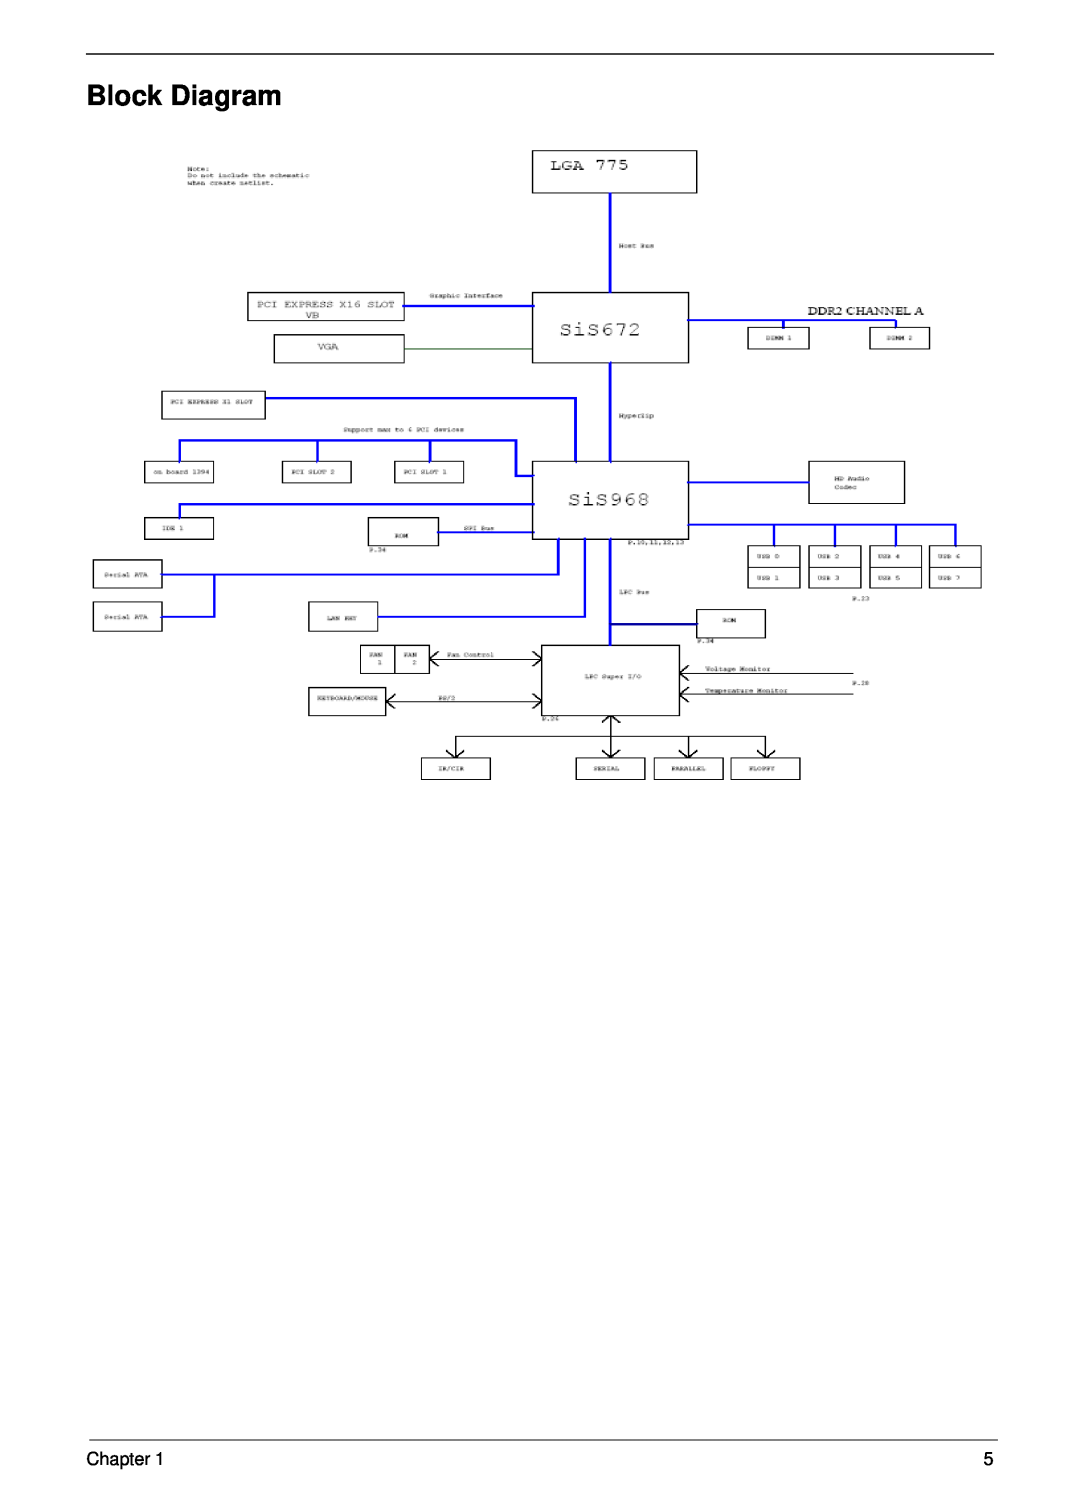 Aspire Digital M261, M1610 manual Block Diagram, Chapter 